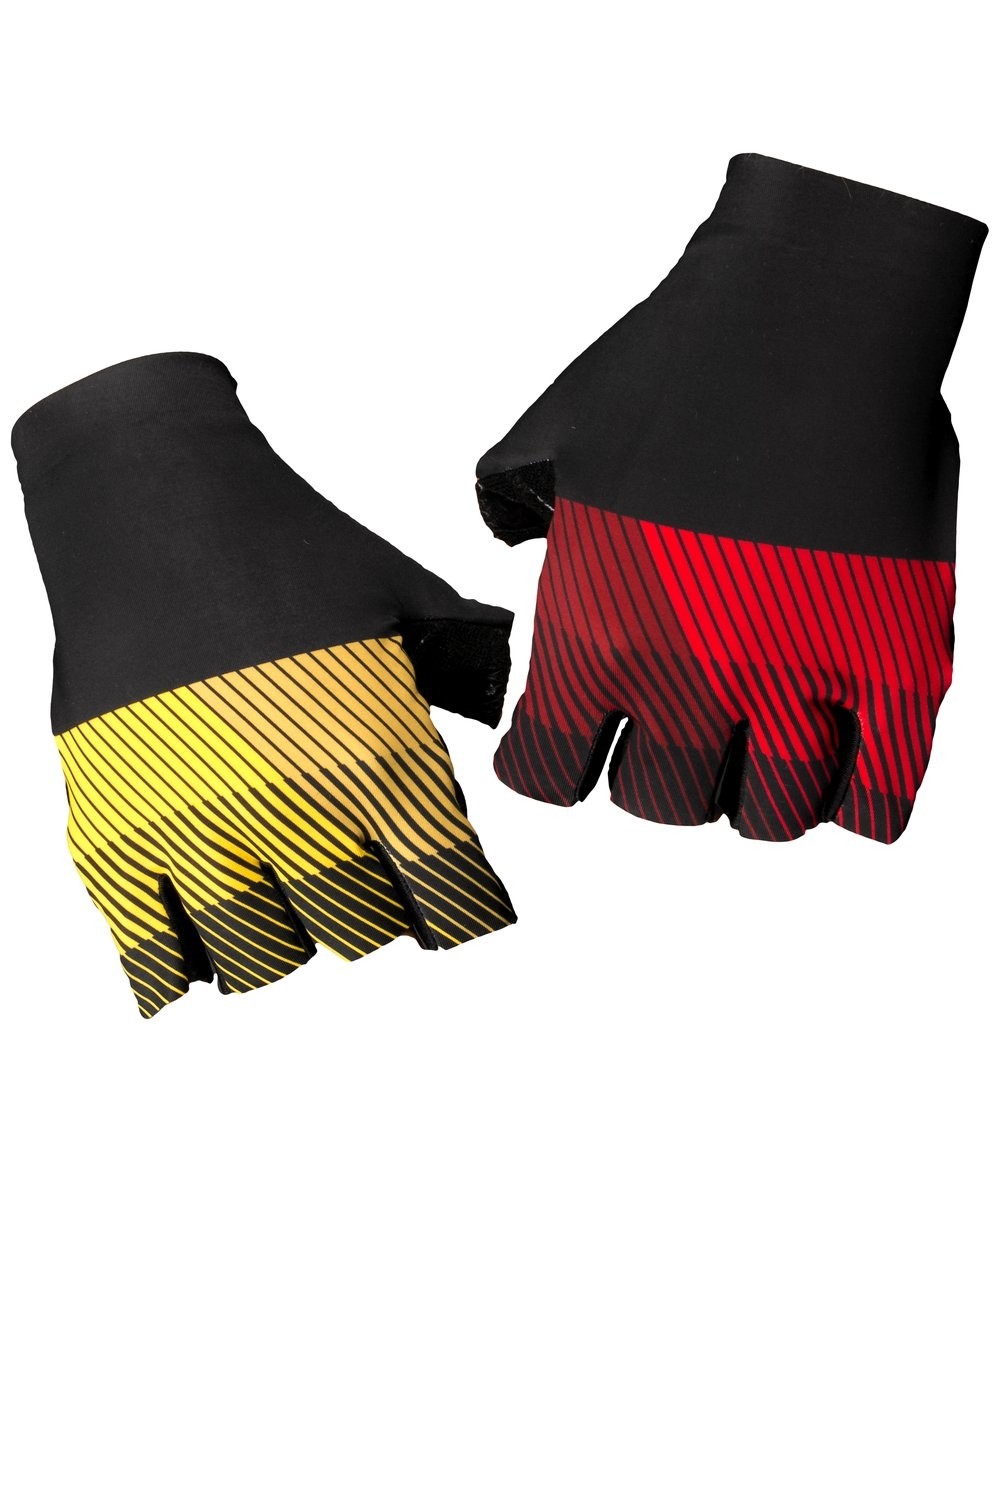 Vermarc chroma sp.l gants de cyclisme noir